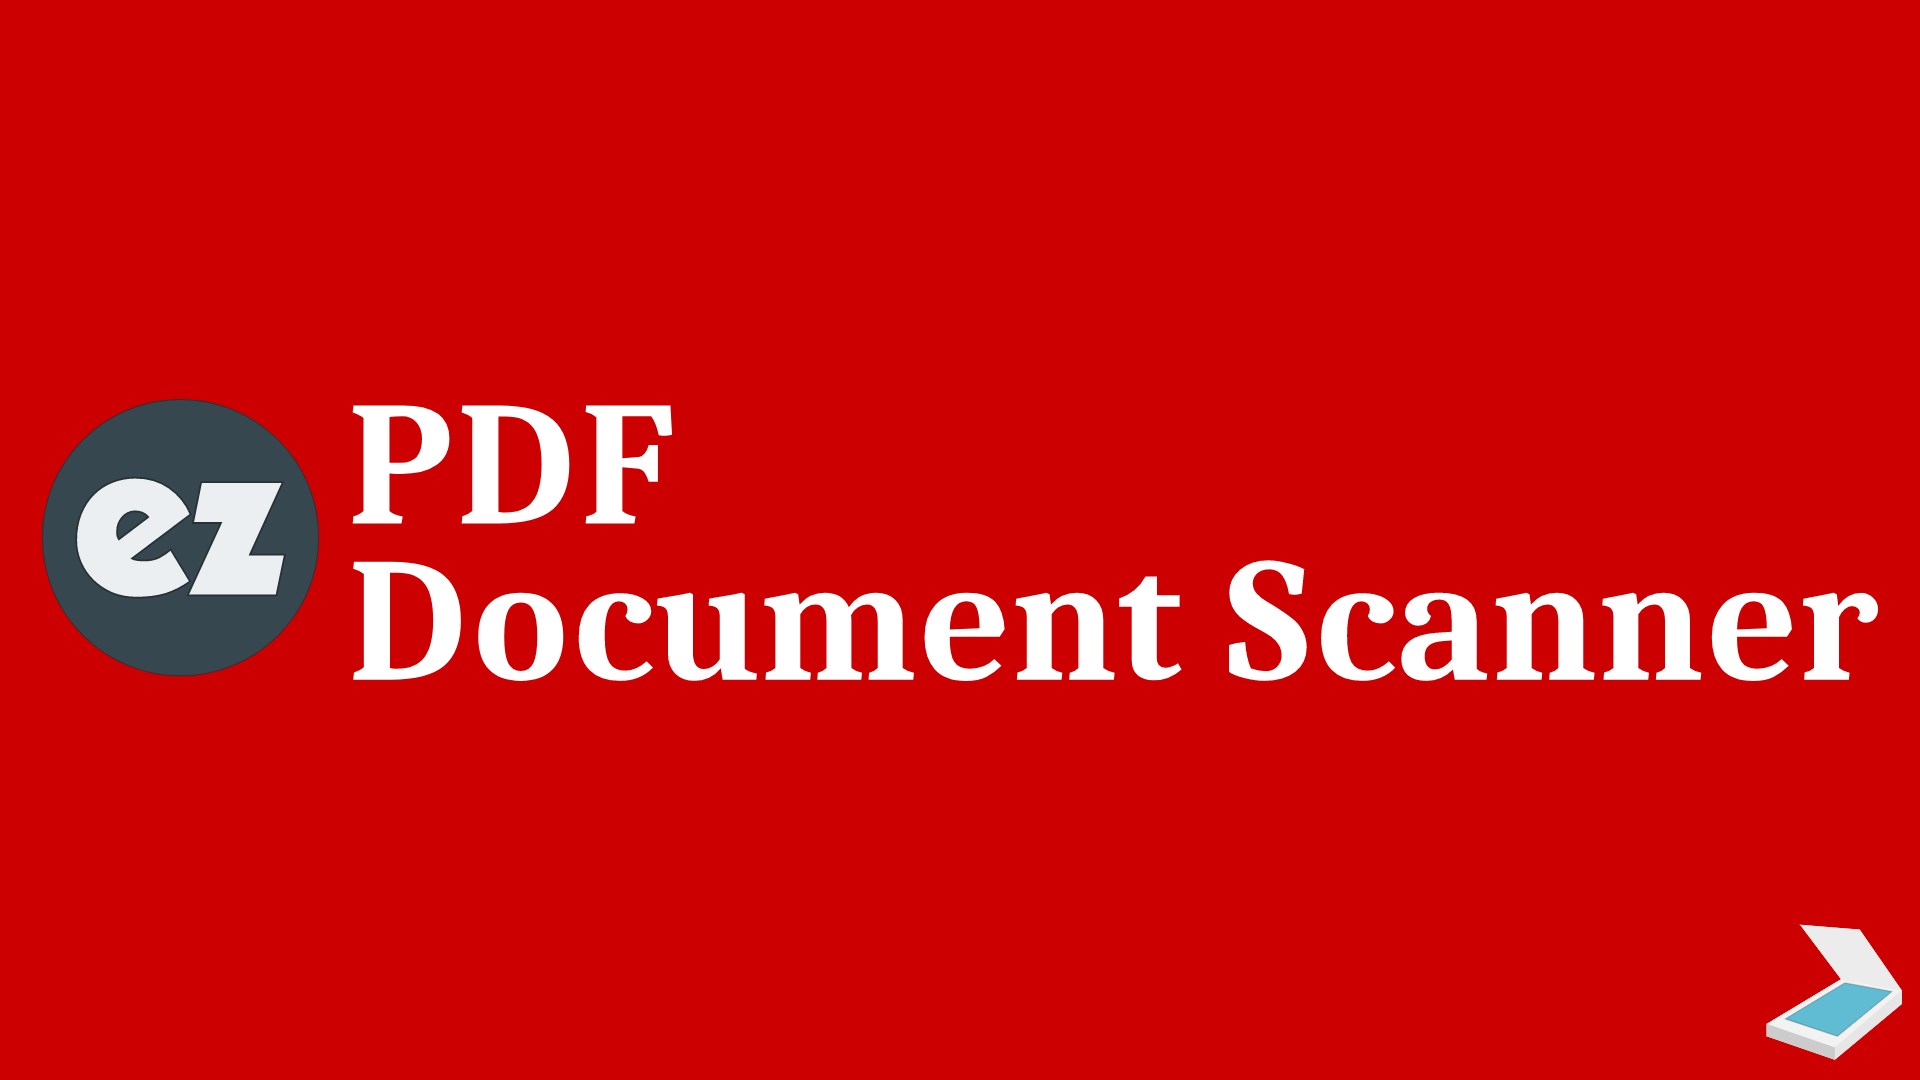 Pdf scanner